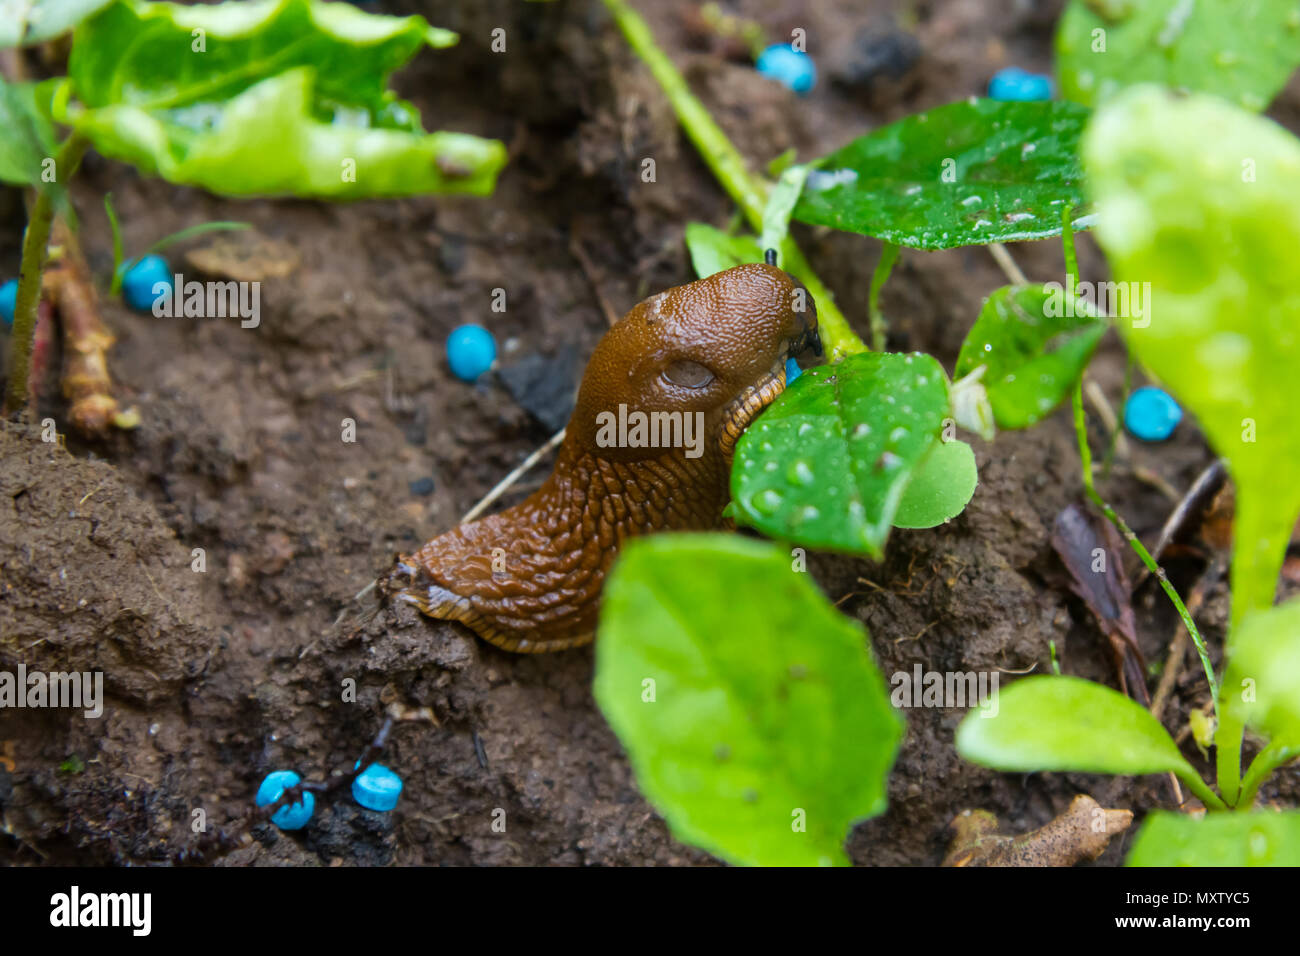 Macro of a slug eating snail grain in a garden bed Stock Photo